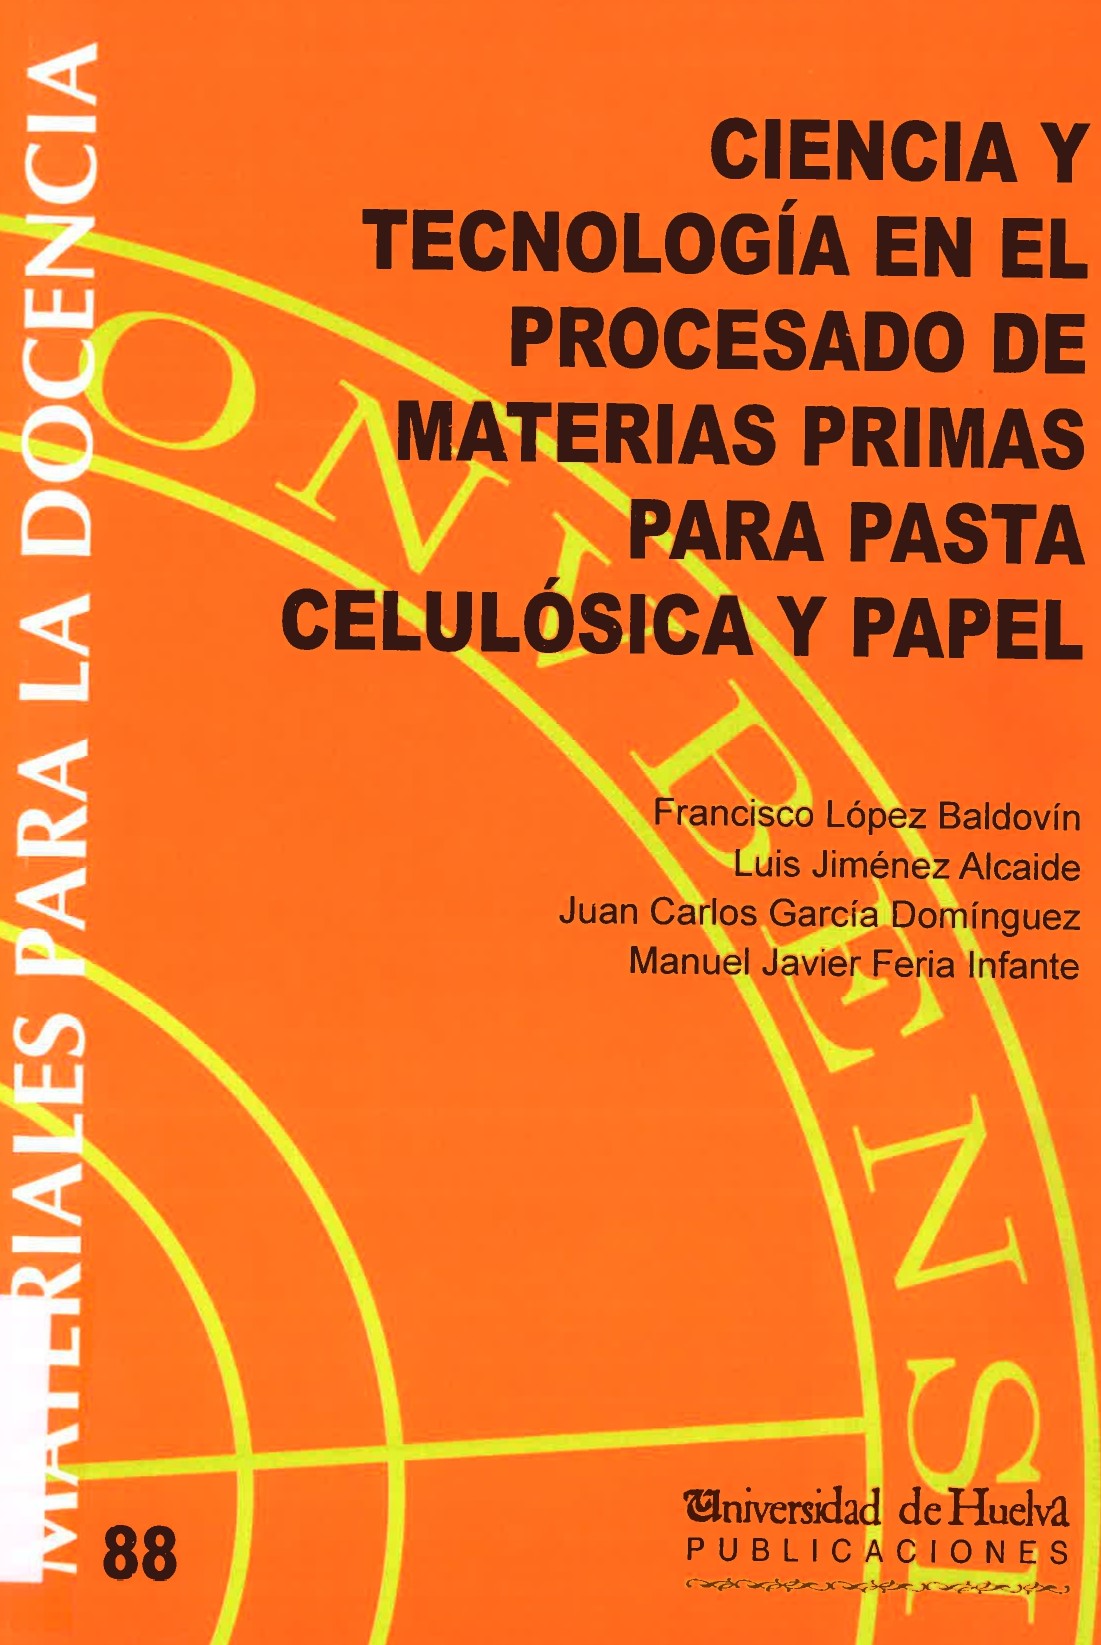 Imagen de portada del libro Ciencia y tecnología en el procesado de materias primas para pasta celulósica y papel